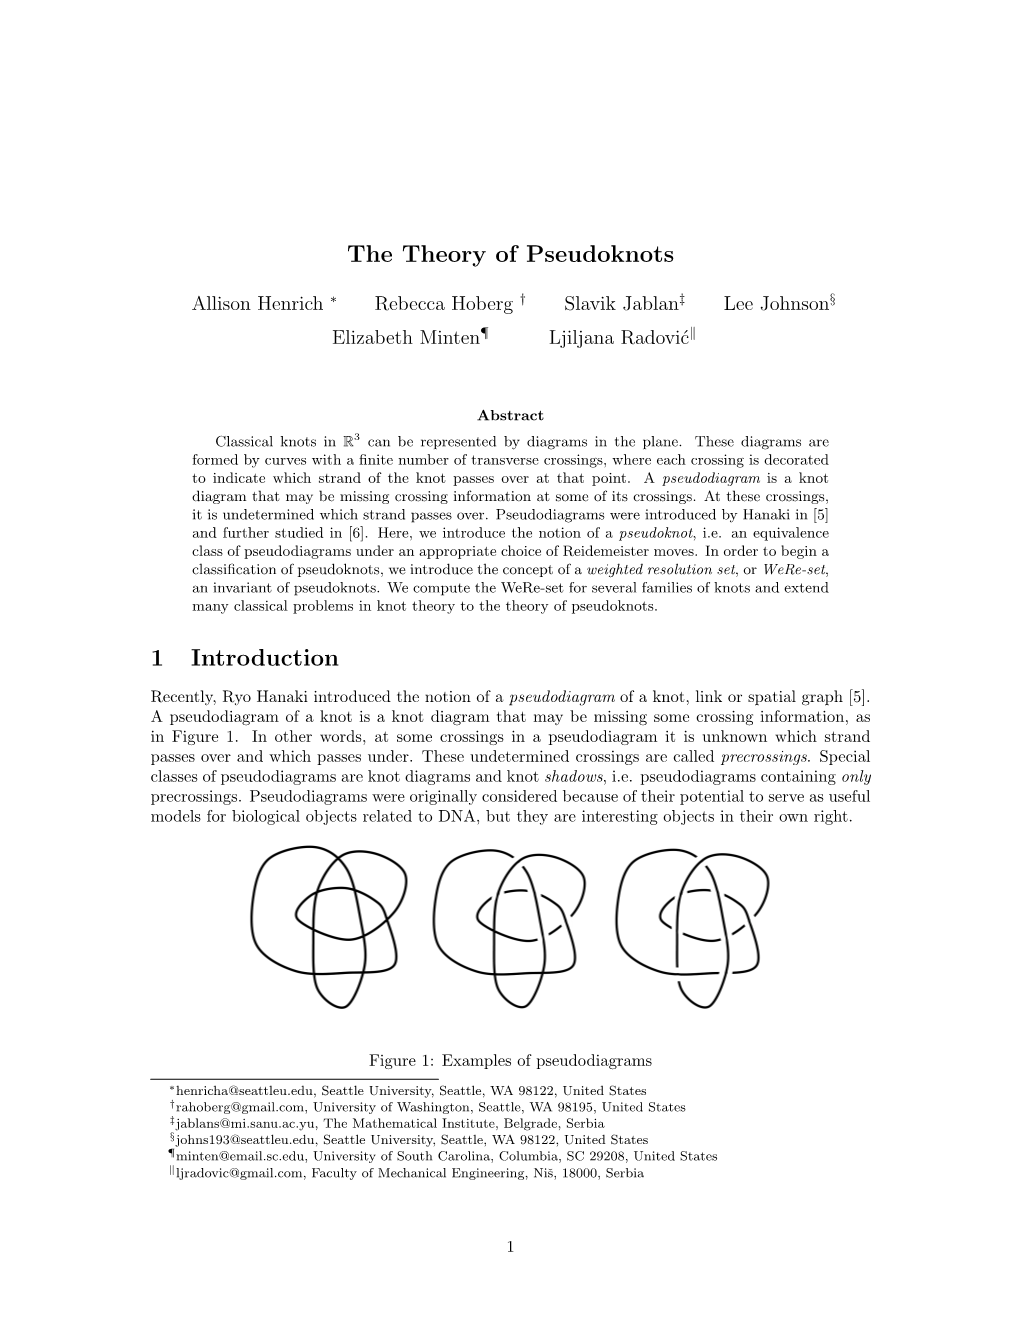 The Theory of Pseudoknots